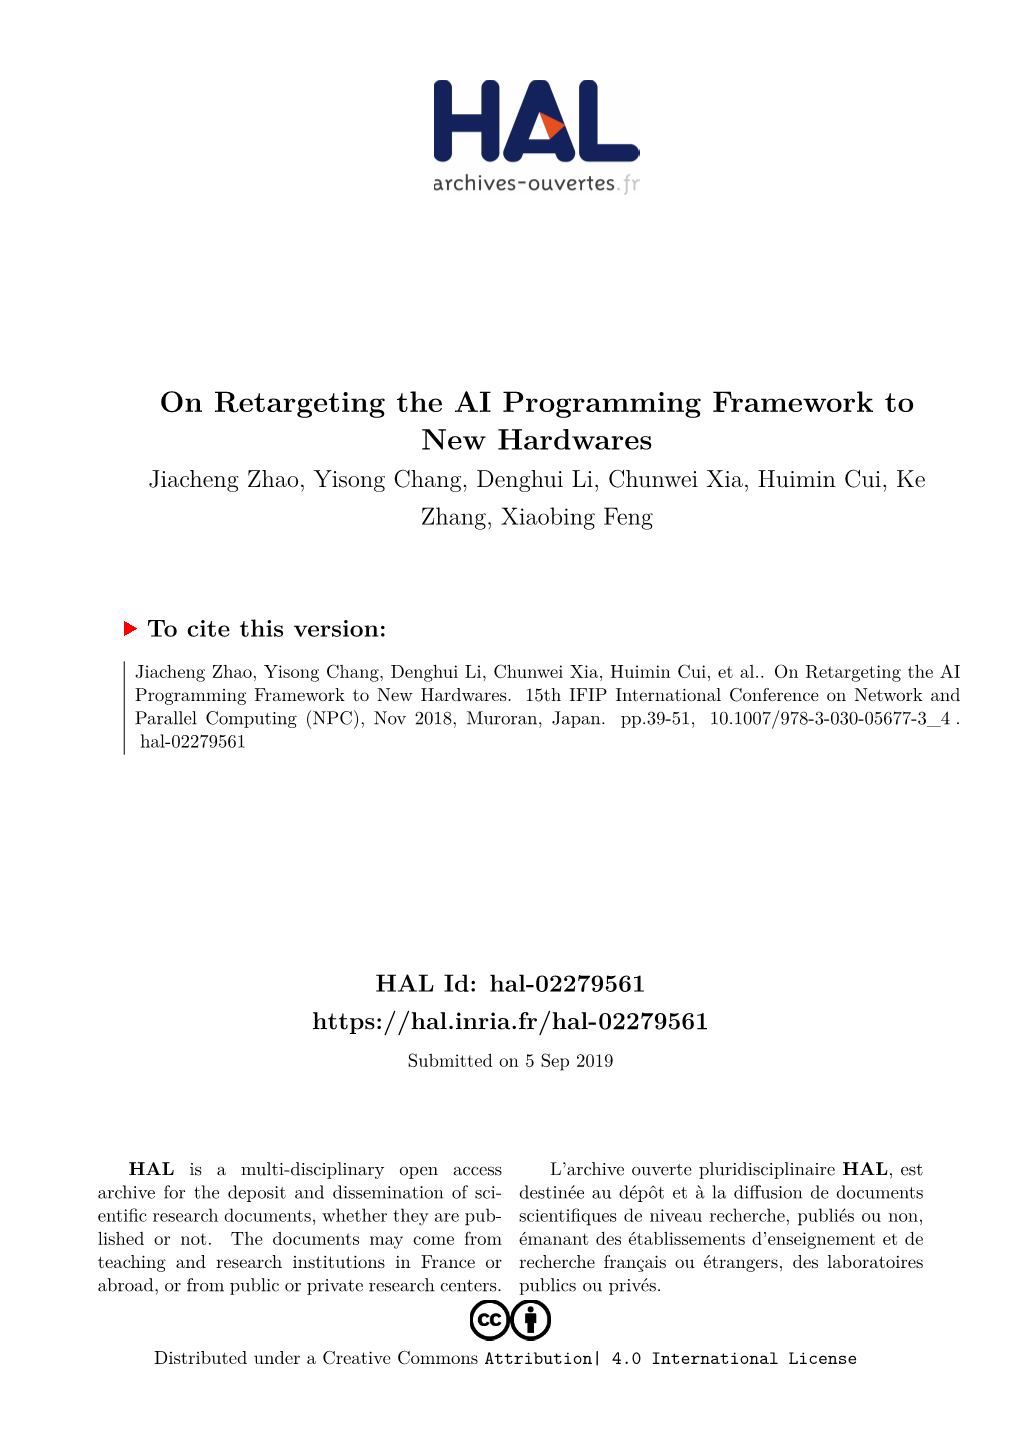 On Retargeting the AI Programming Framework to New Hardwares Jiacheng Zhao, Yisong Chang, Denghui Li, Chunwei Xia, Huimin Cui, Ke Zhang, Xiaobing Feng